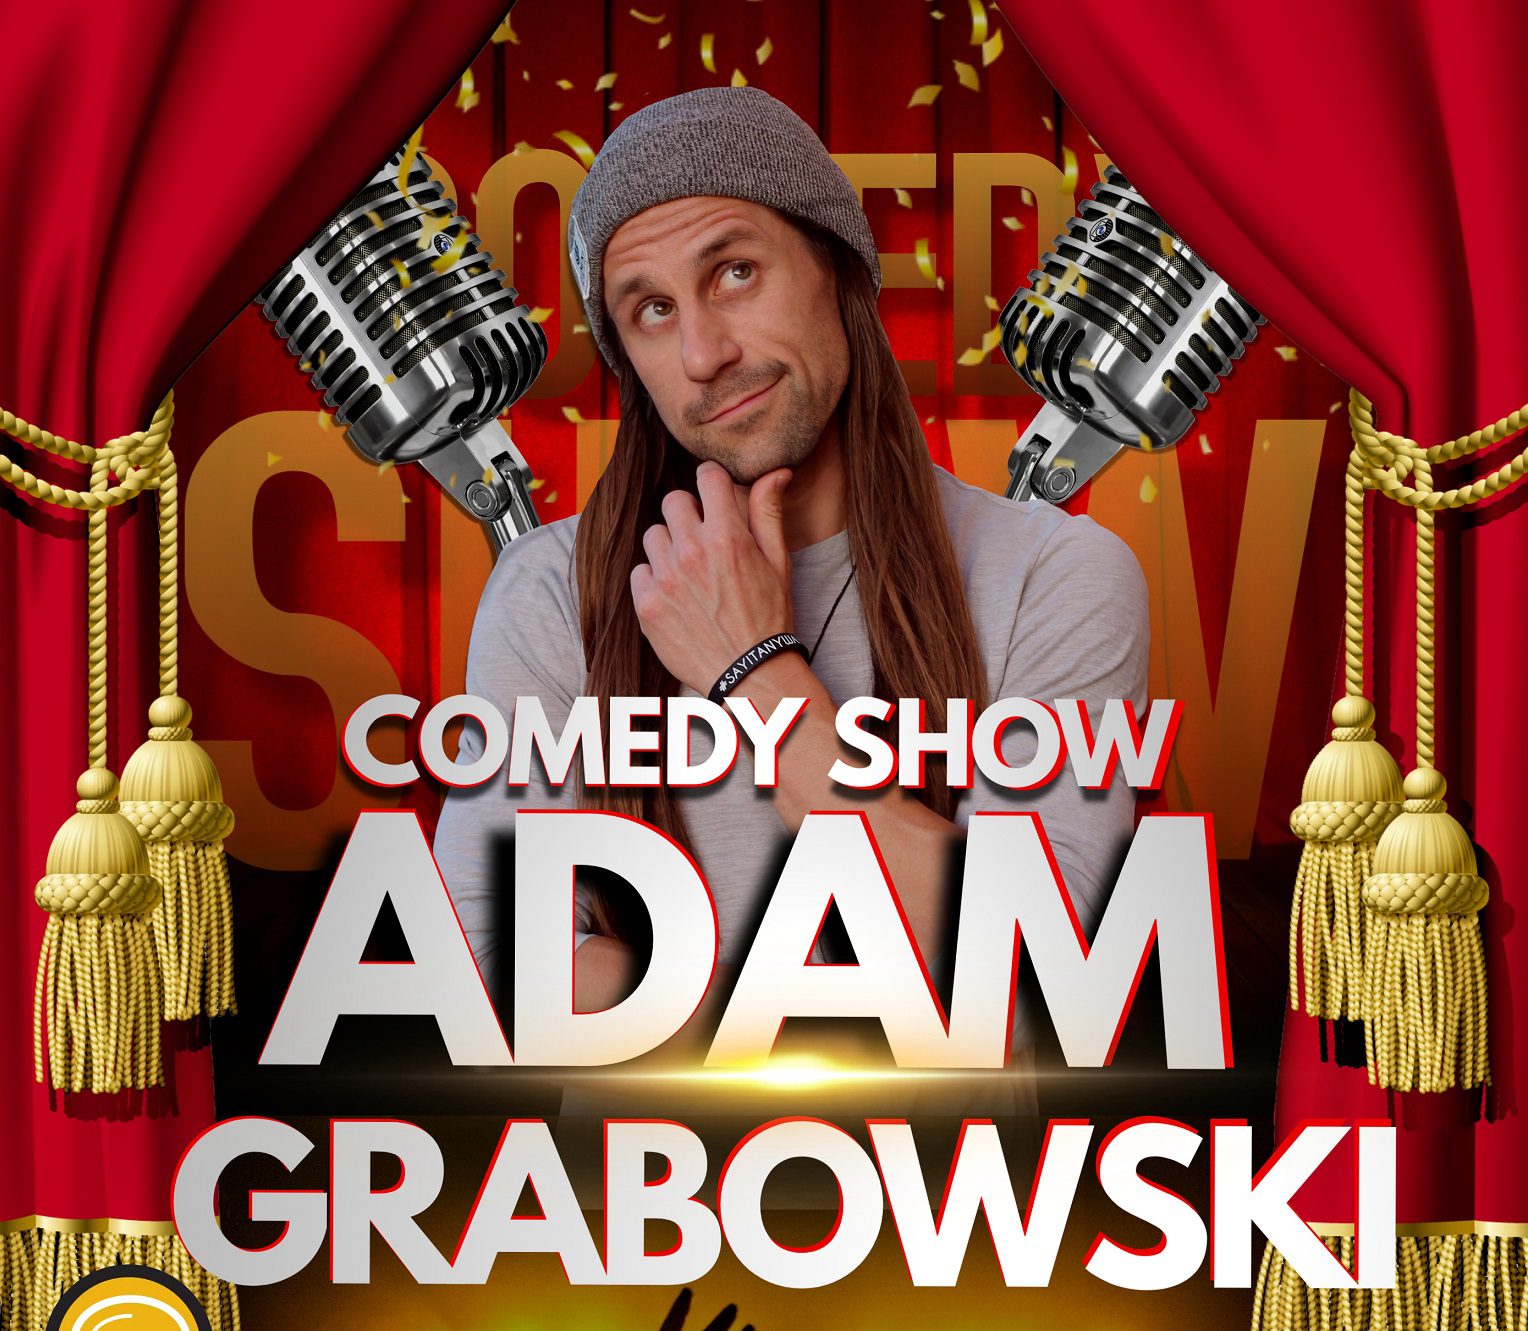 Comedy Show with Adam Grabowski